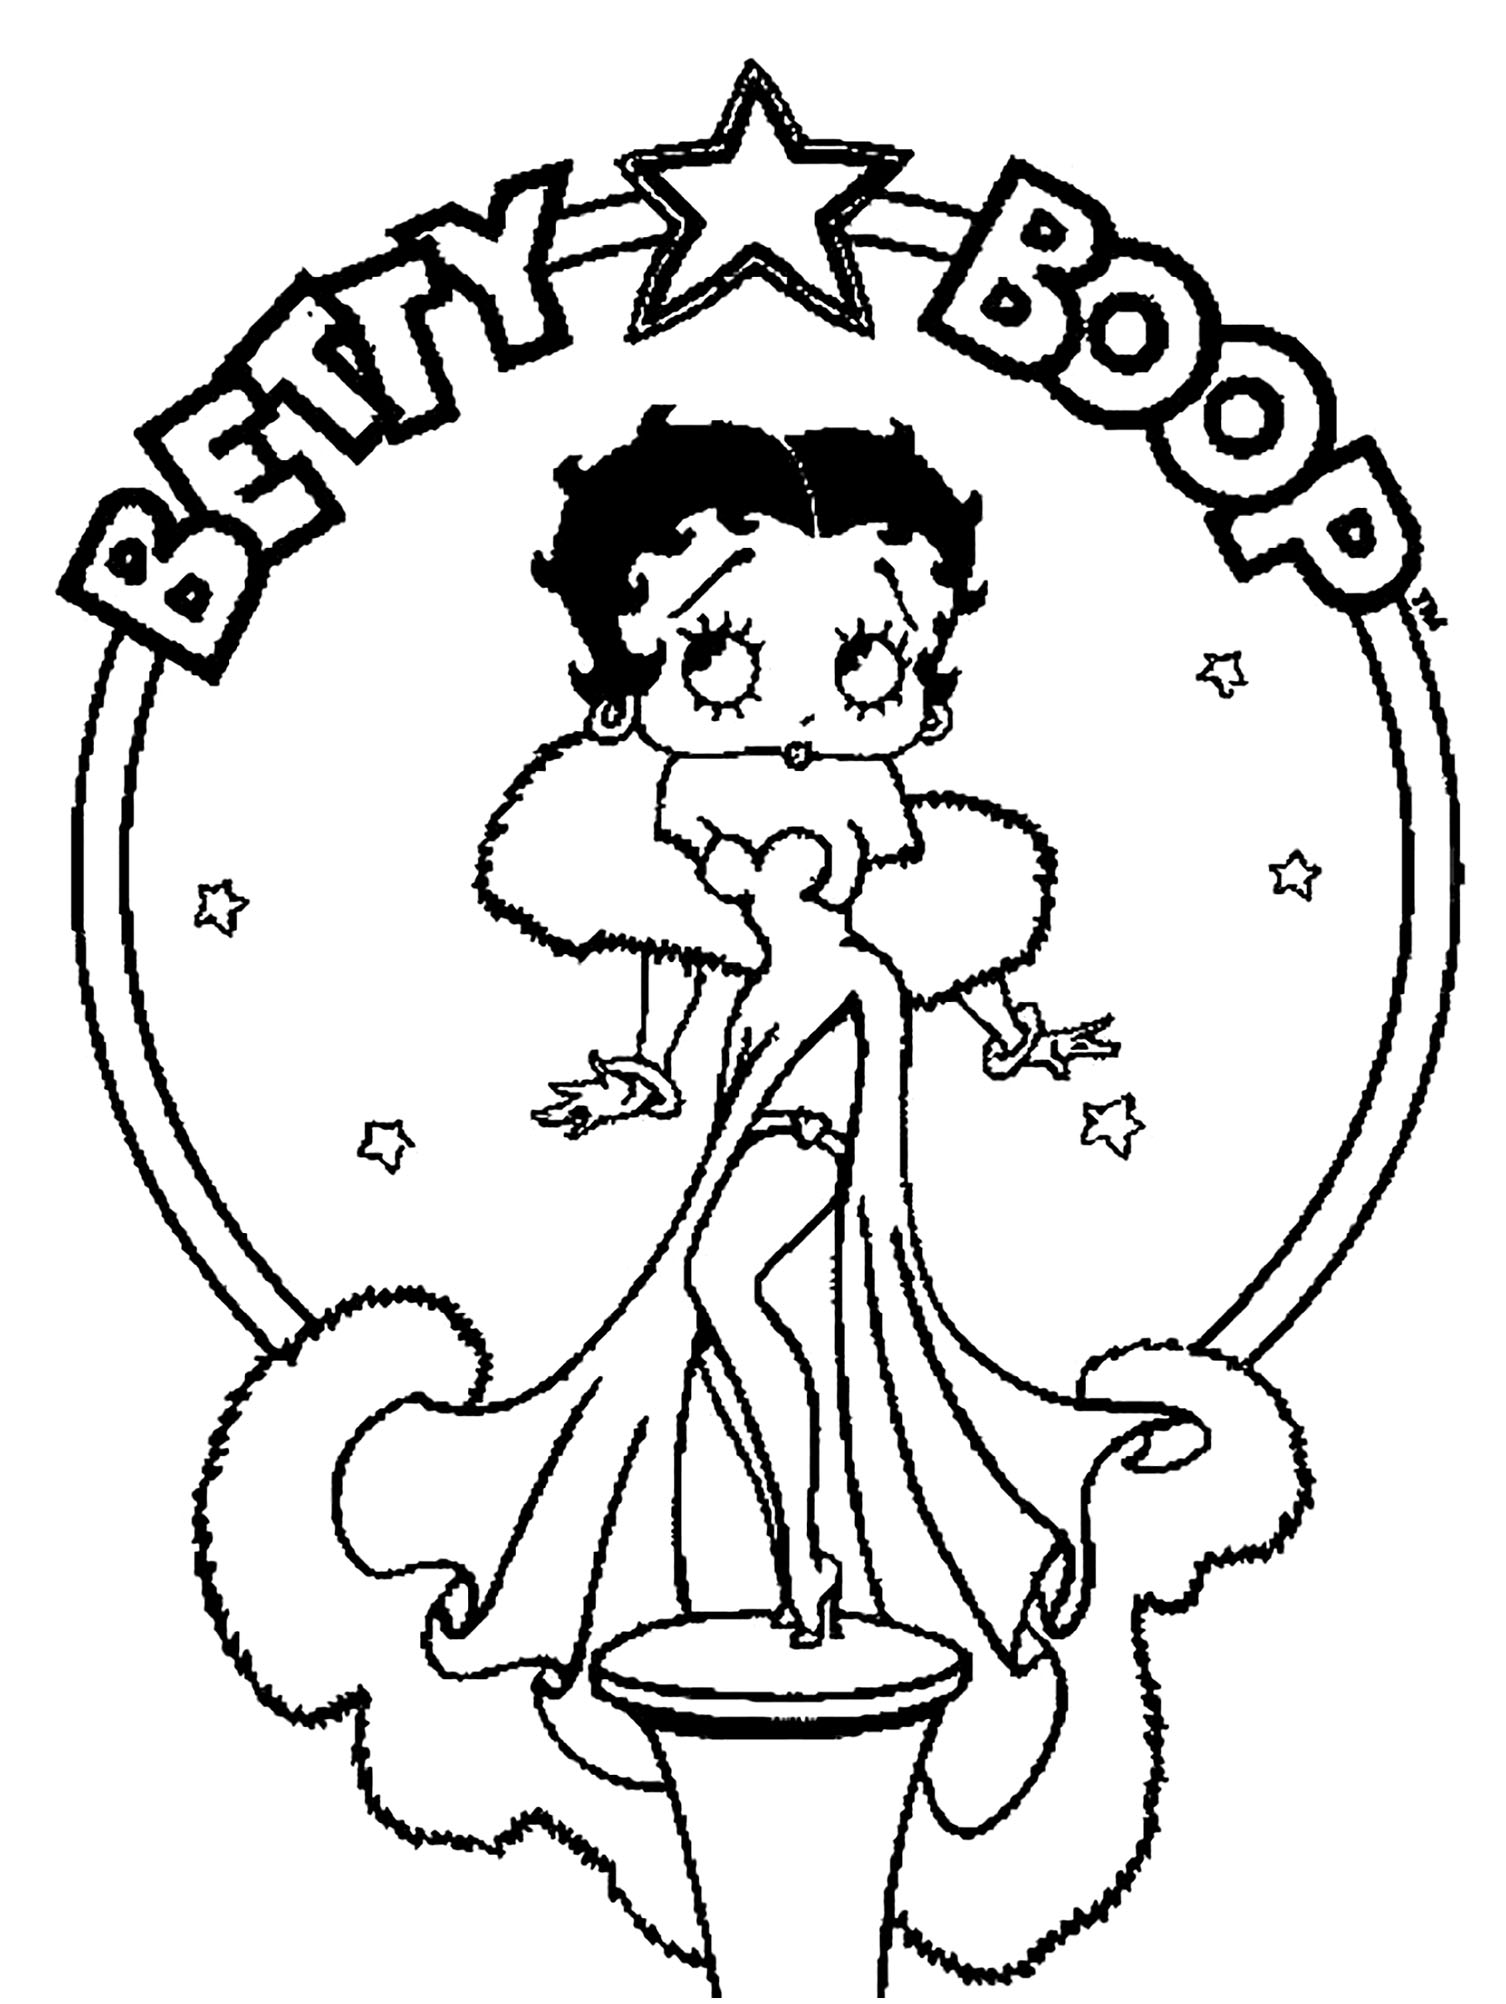 Dibujos para colorear de Betty Boop